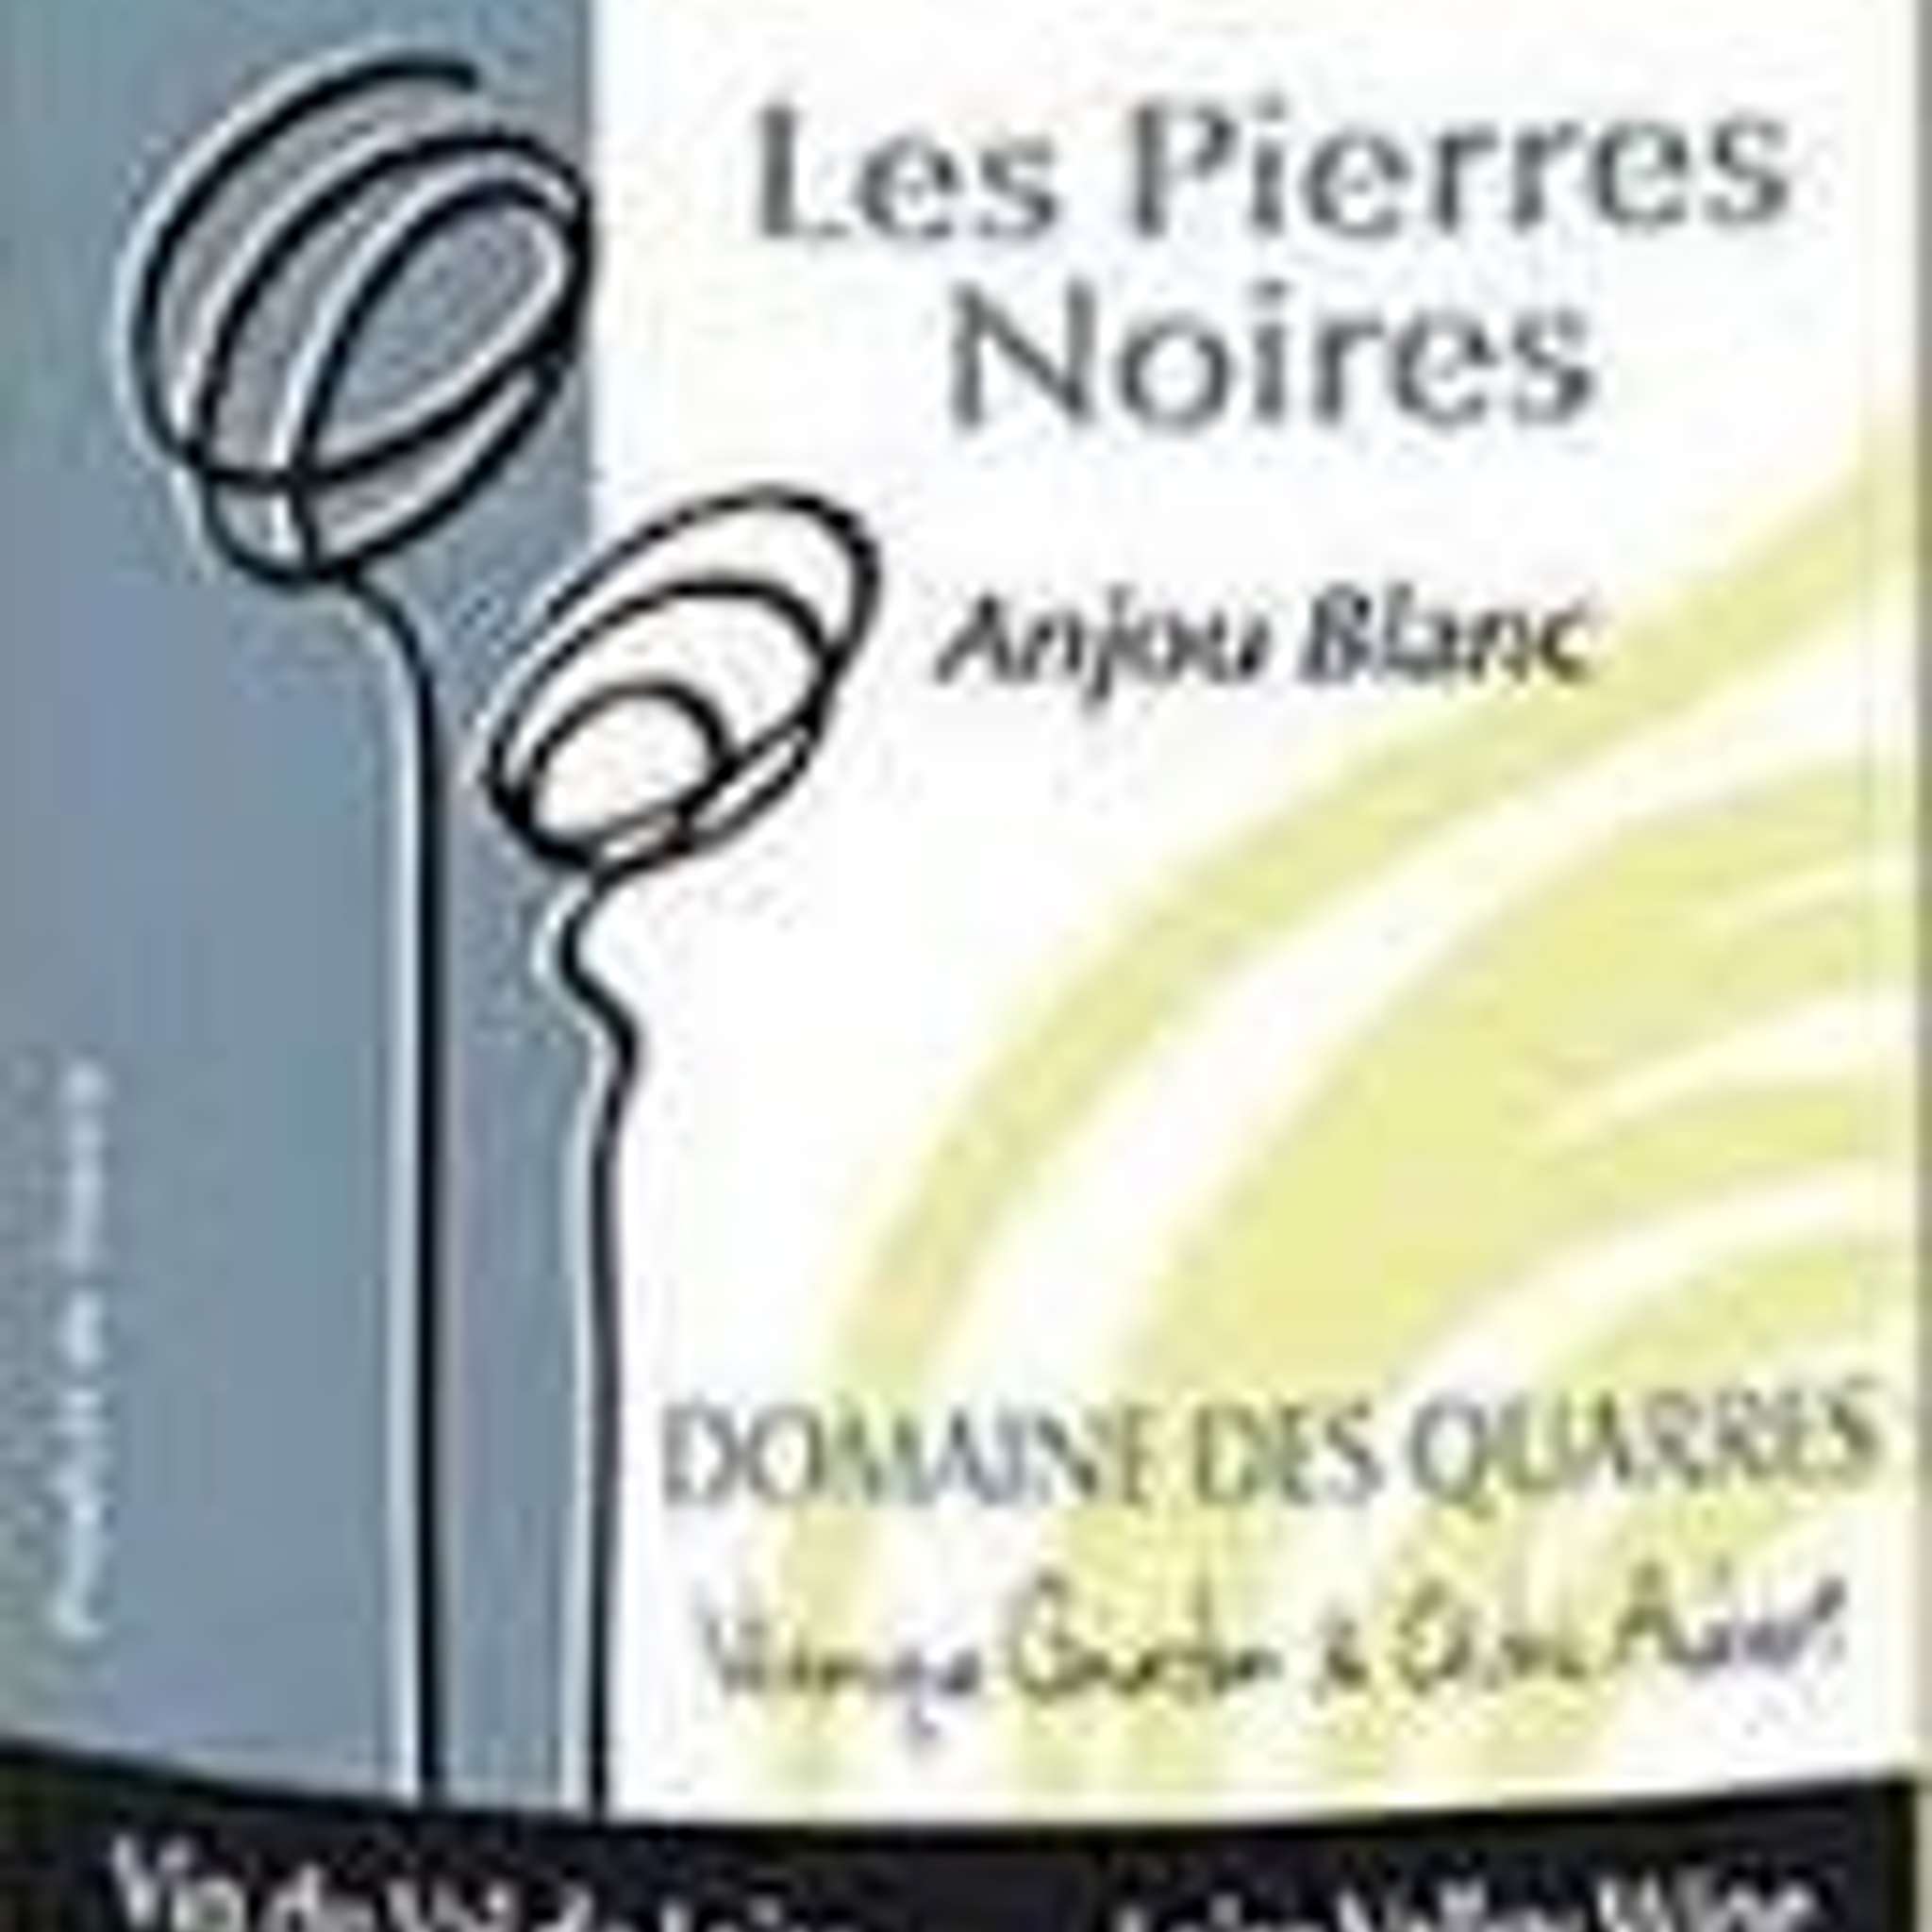 アンジュ・ブラン　レ・ピエール・ノワール
Anjou Blanc les Pierre Noir